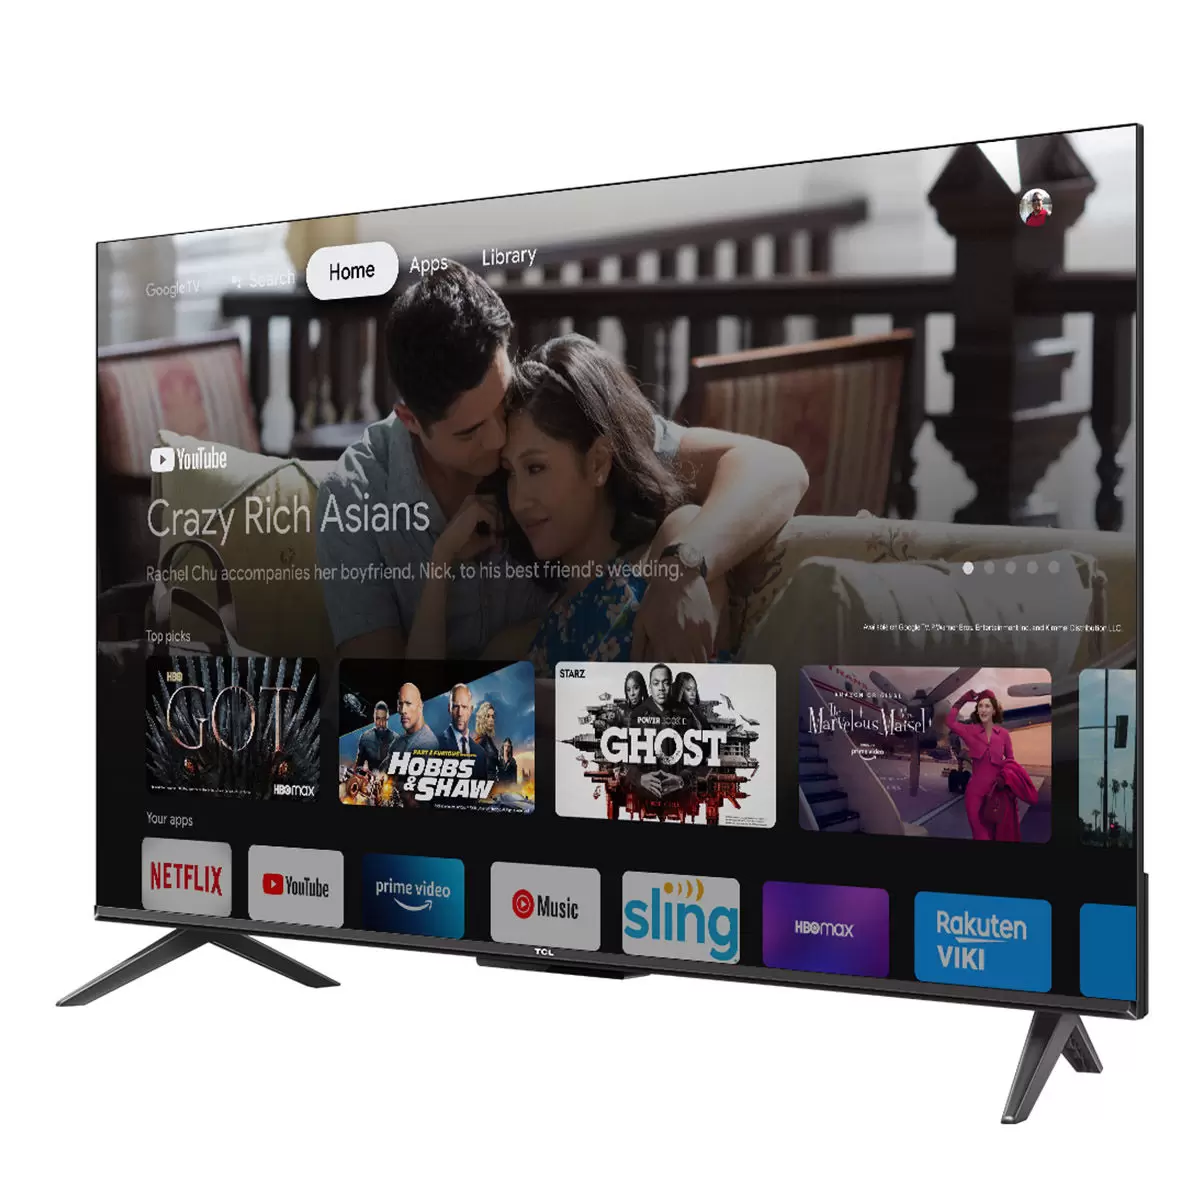 TCL 43吋 4K UHD Google TV 智能連網液晶顯示器不含視訊盒 43P735 7入組